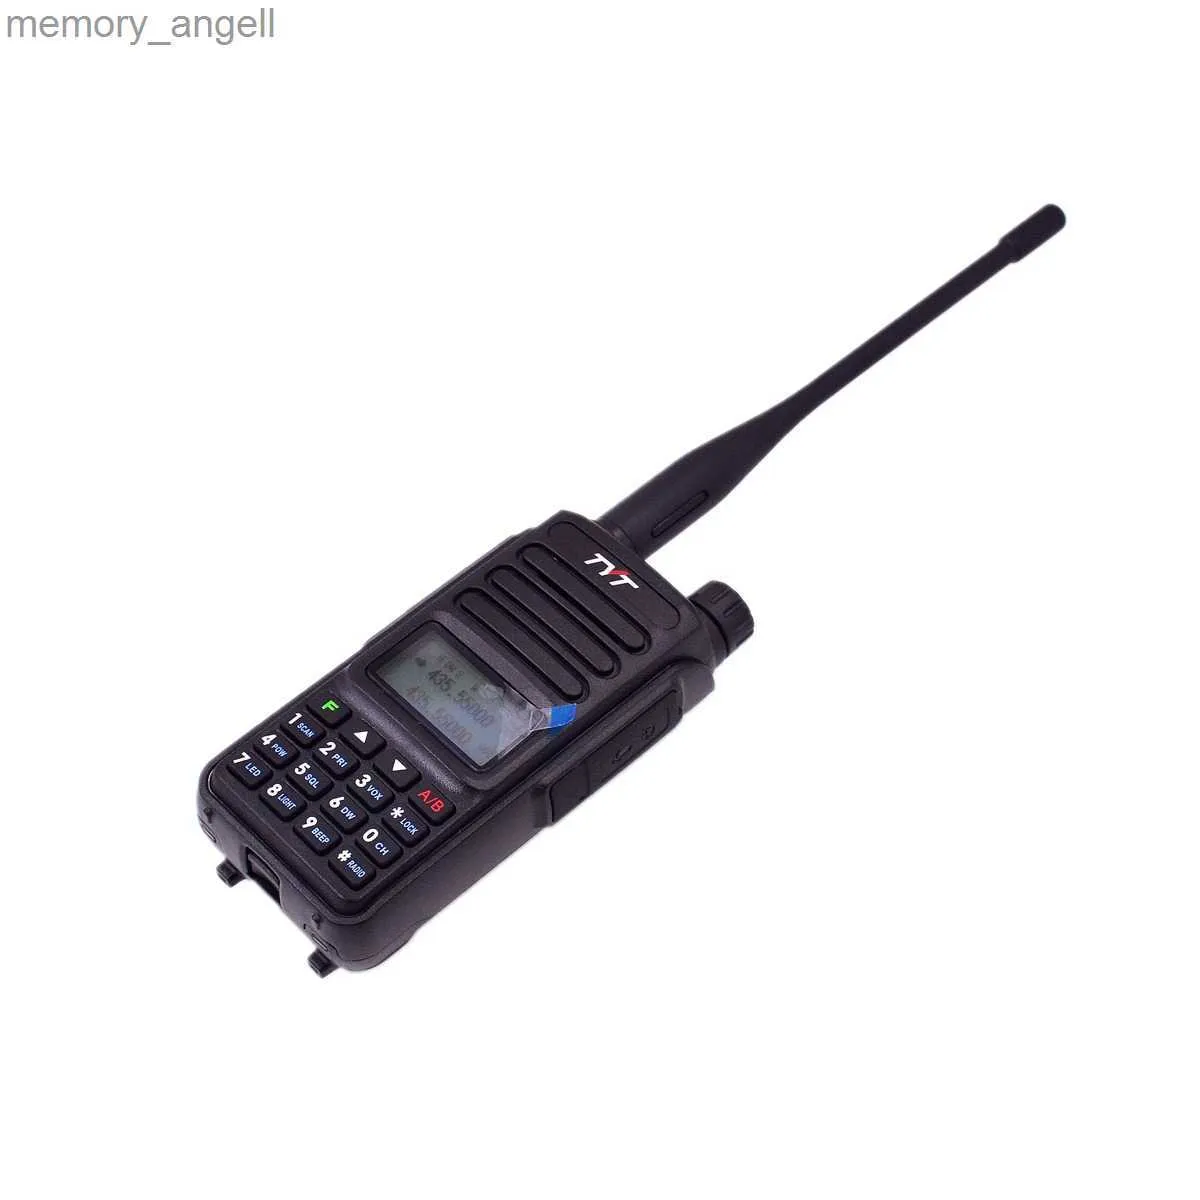 Walkie talkie tyt Uv98 Walkie talkie 10W 3200MAH Dual Band UHF VHF DOT MATRIX Screen HD Audio Scrambler DTMF Wireless Radio Komunikacja HKD230922